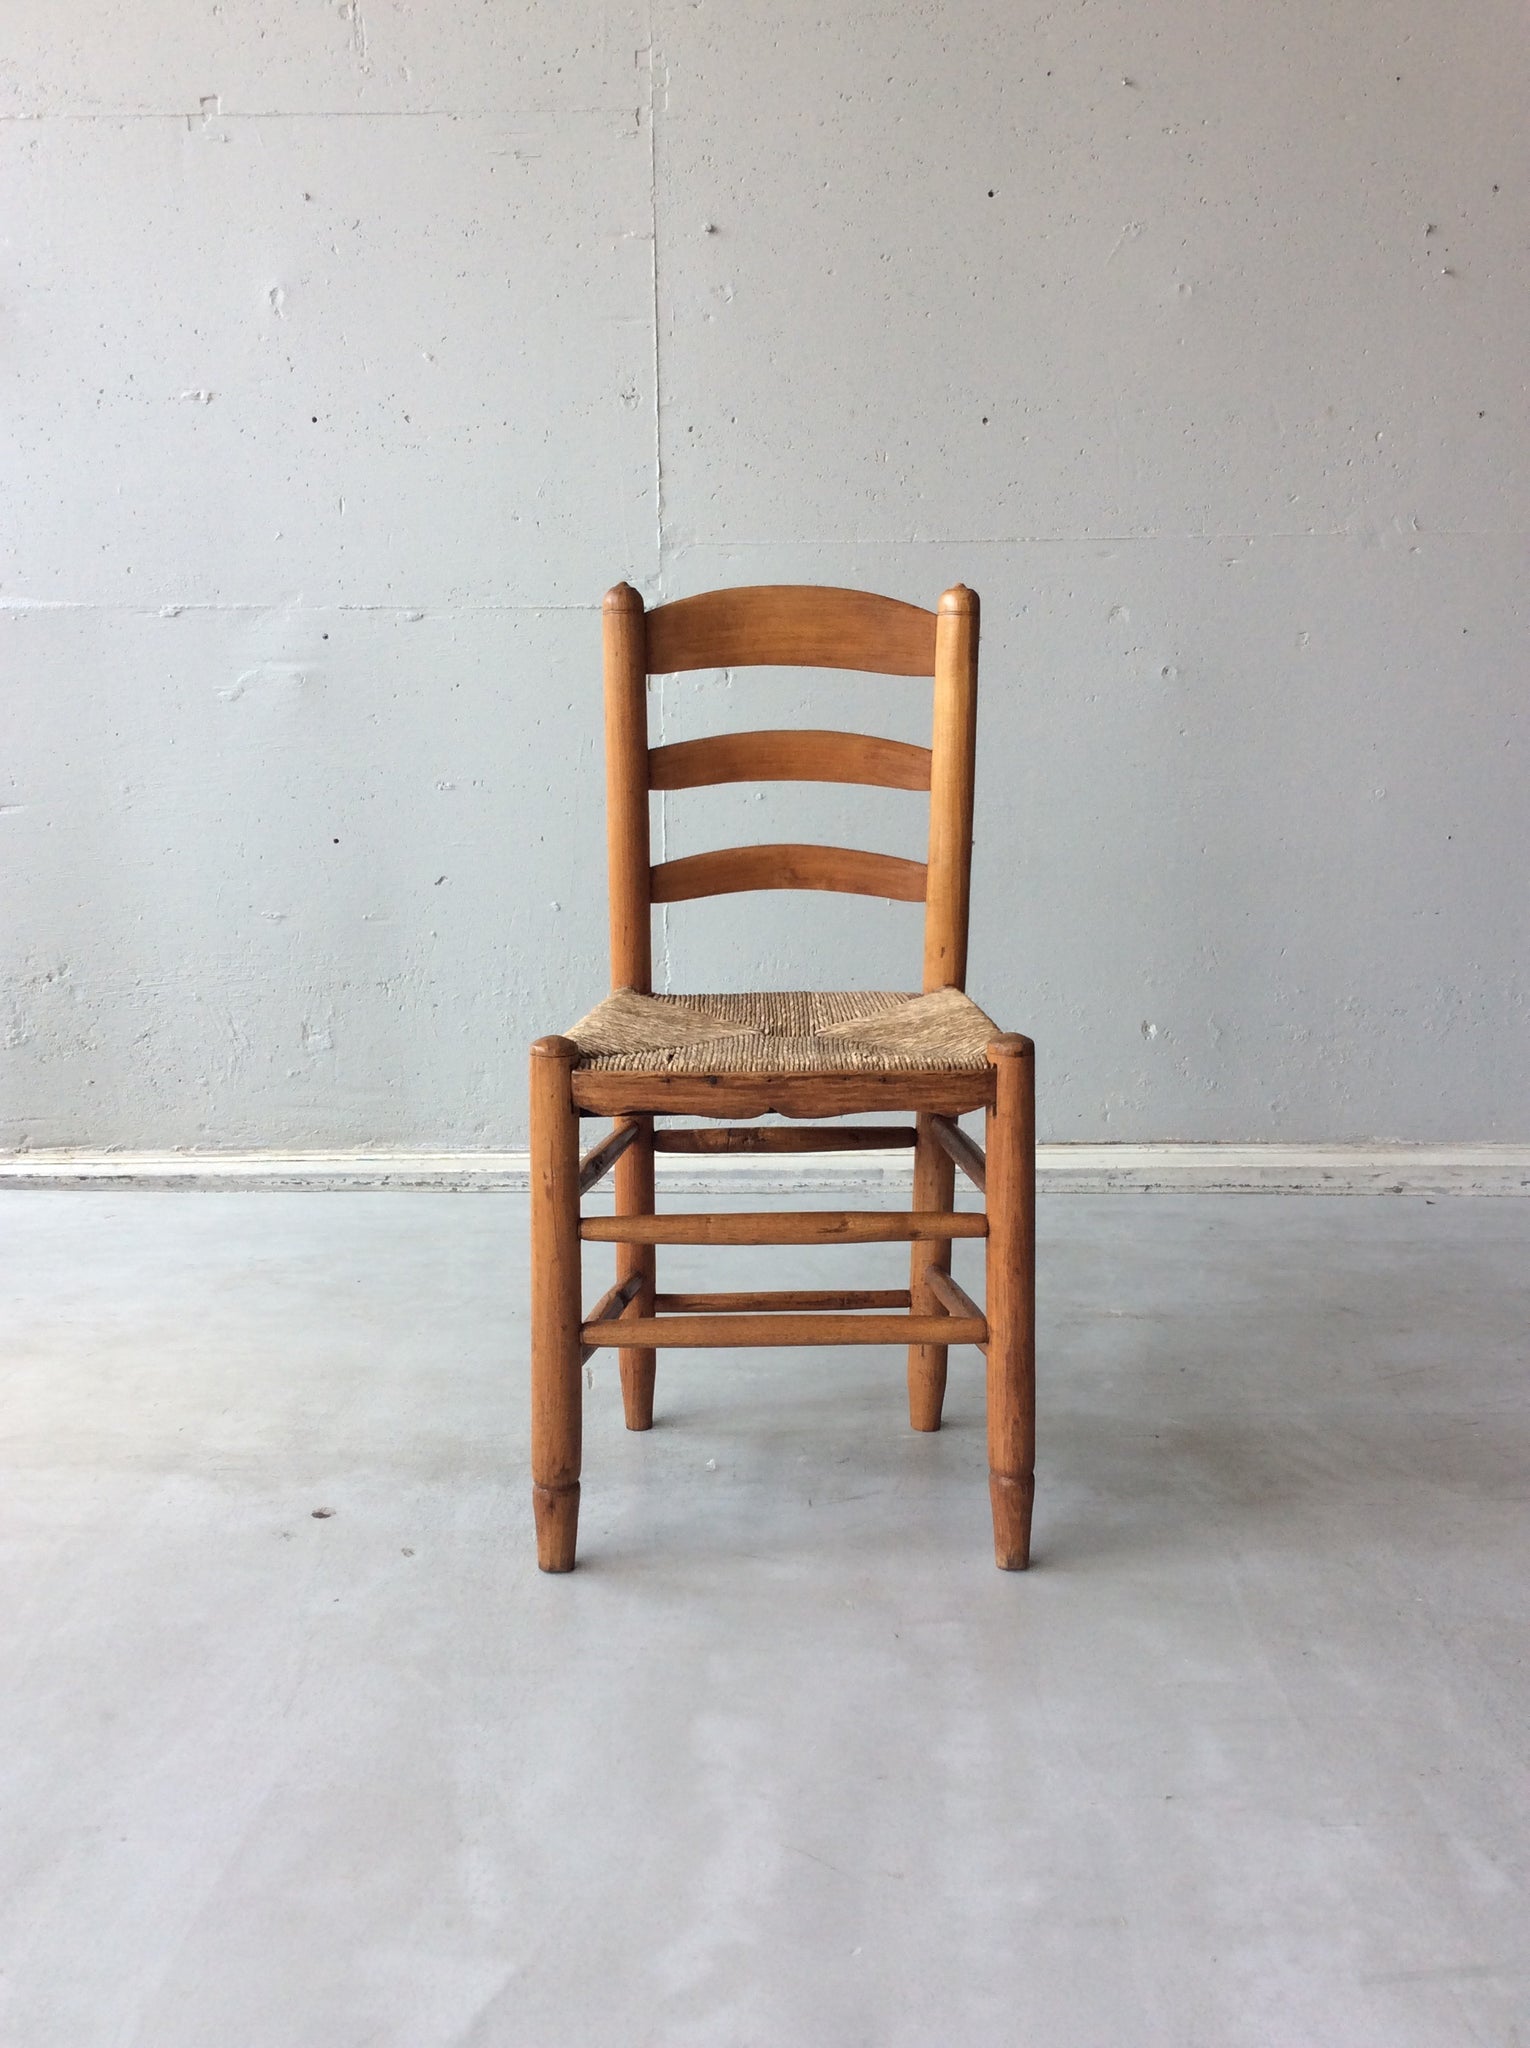 ウィッカー チェア / wicker chair #0078　